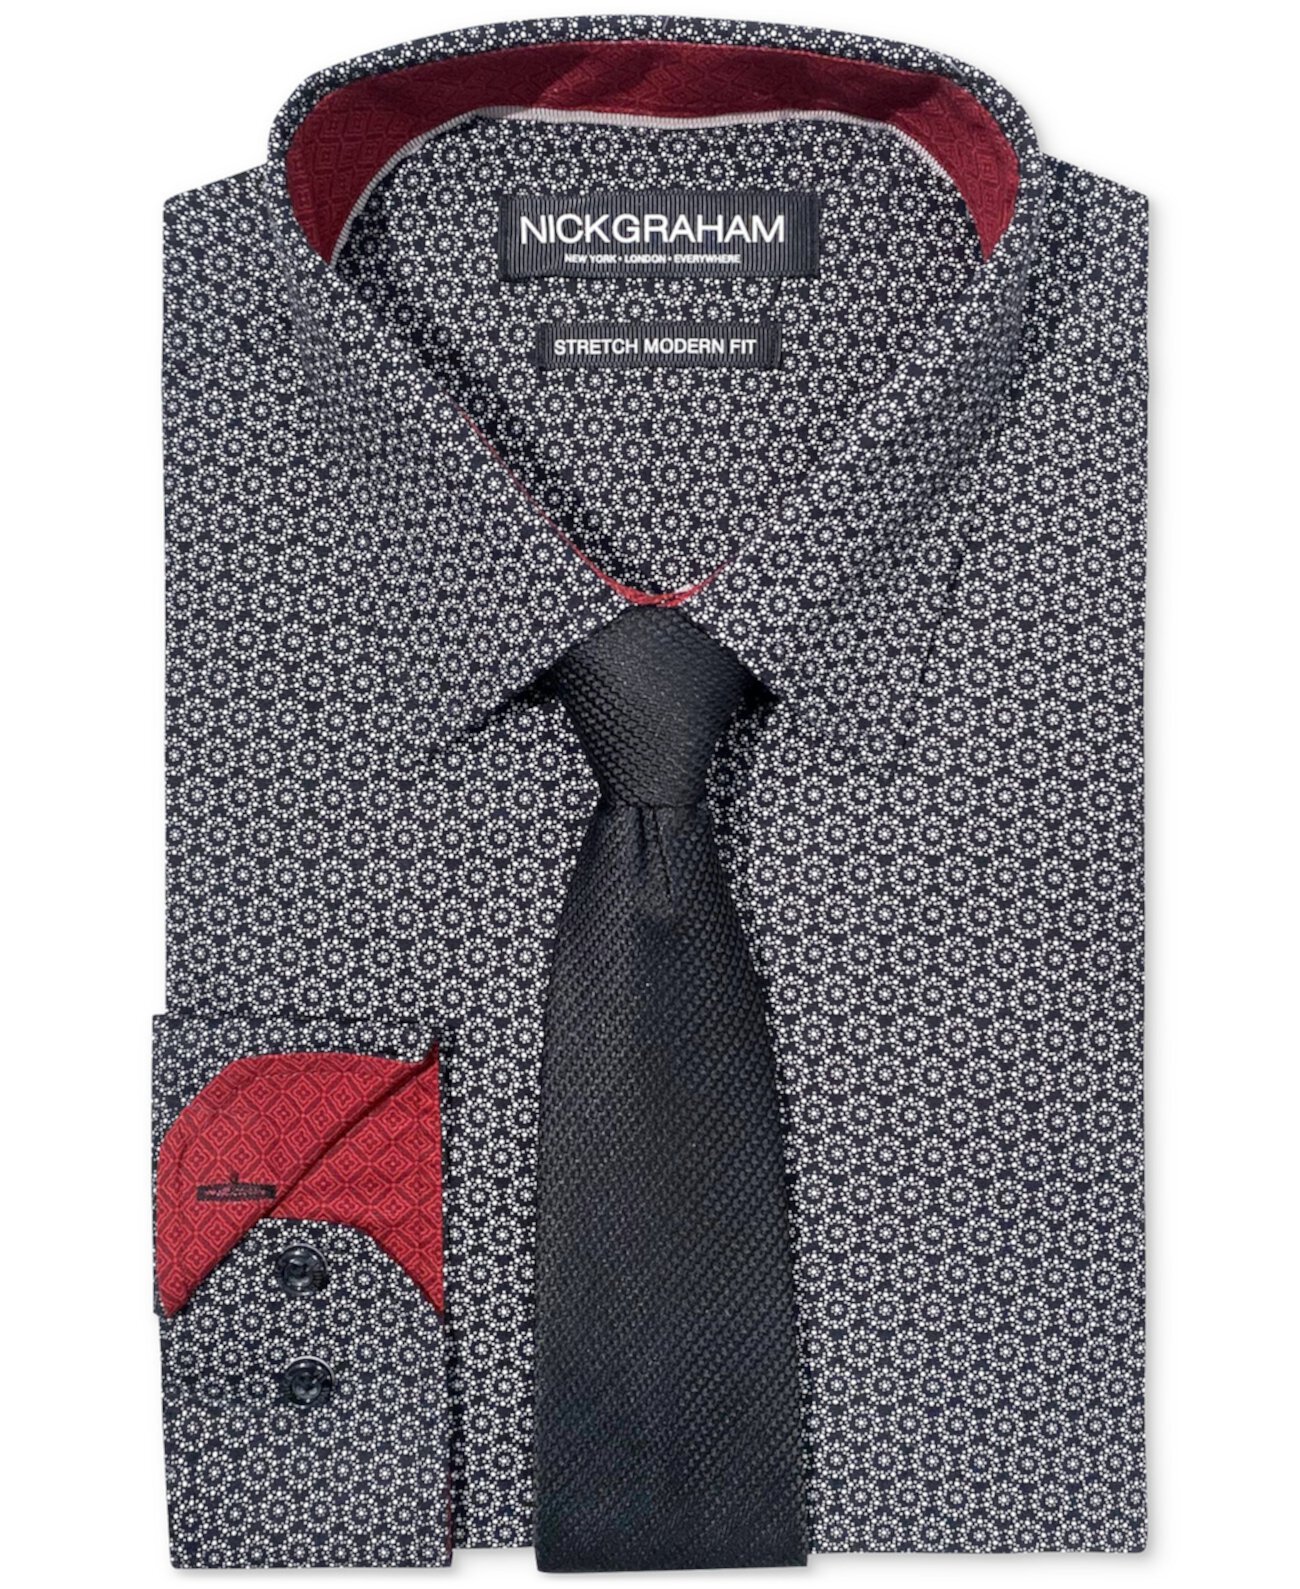 Мужской облегающий комплект из классической рубашки и галстука с узором в виде круга Nick Graham